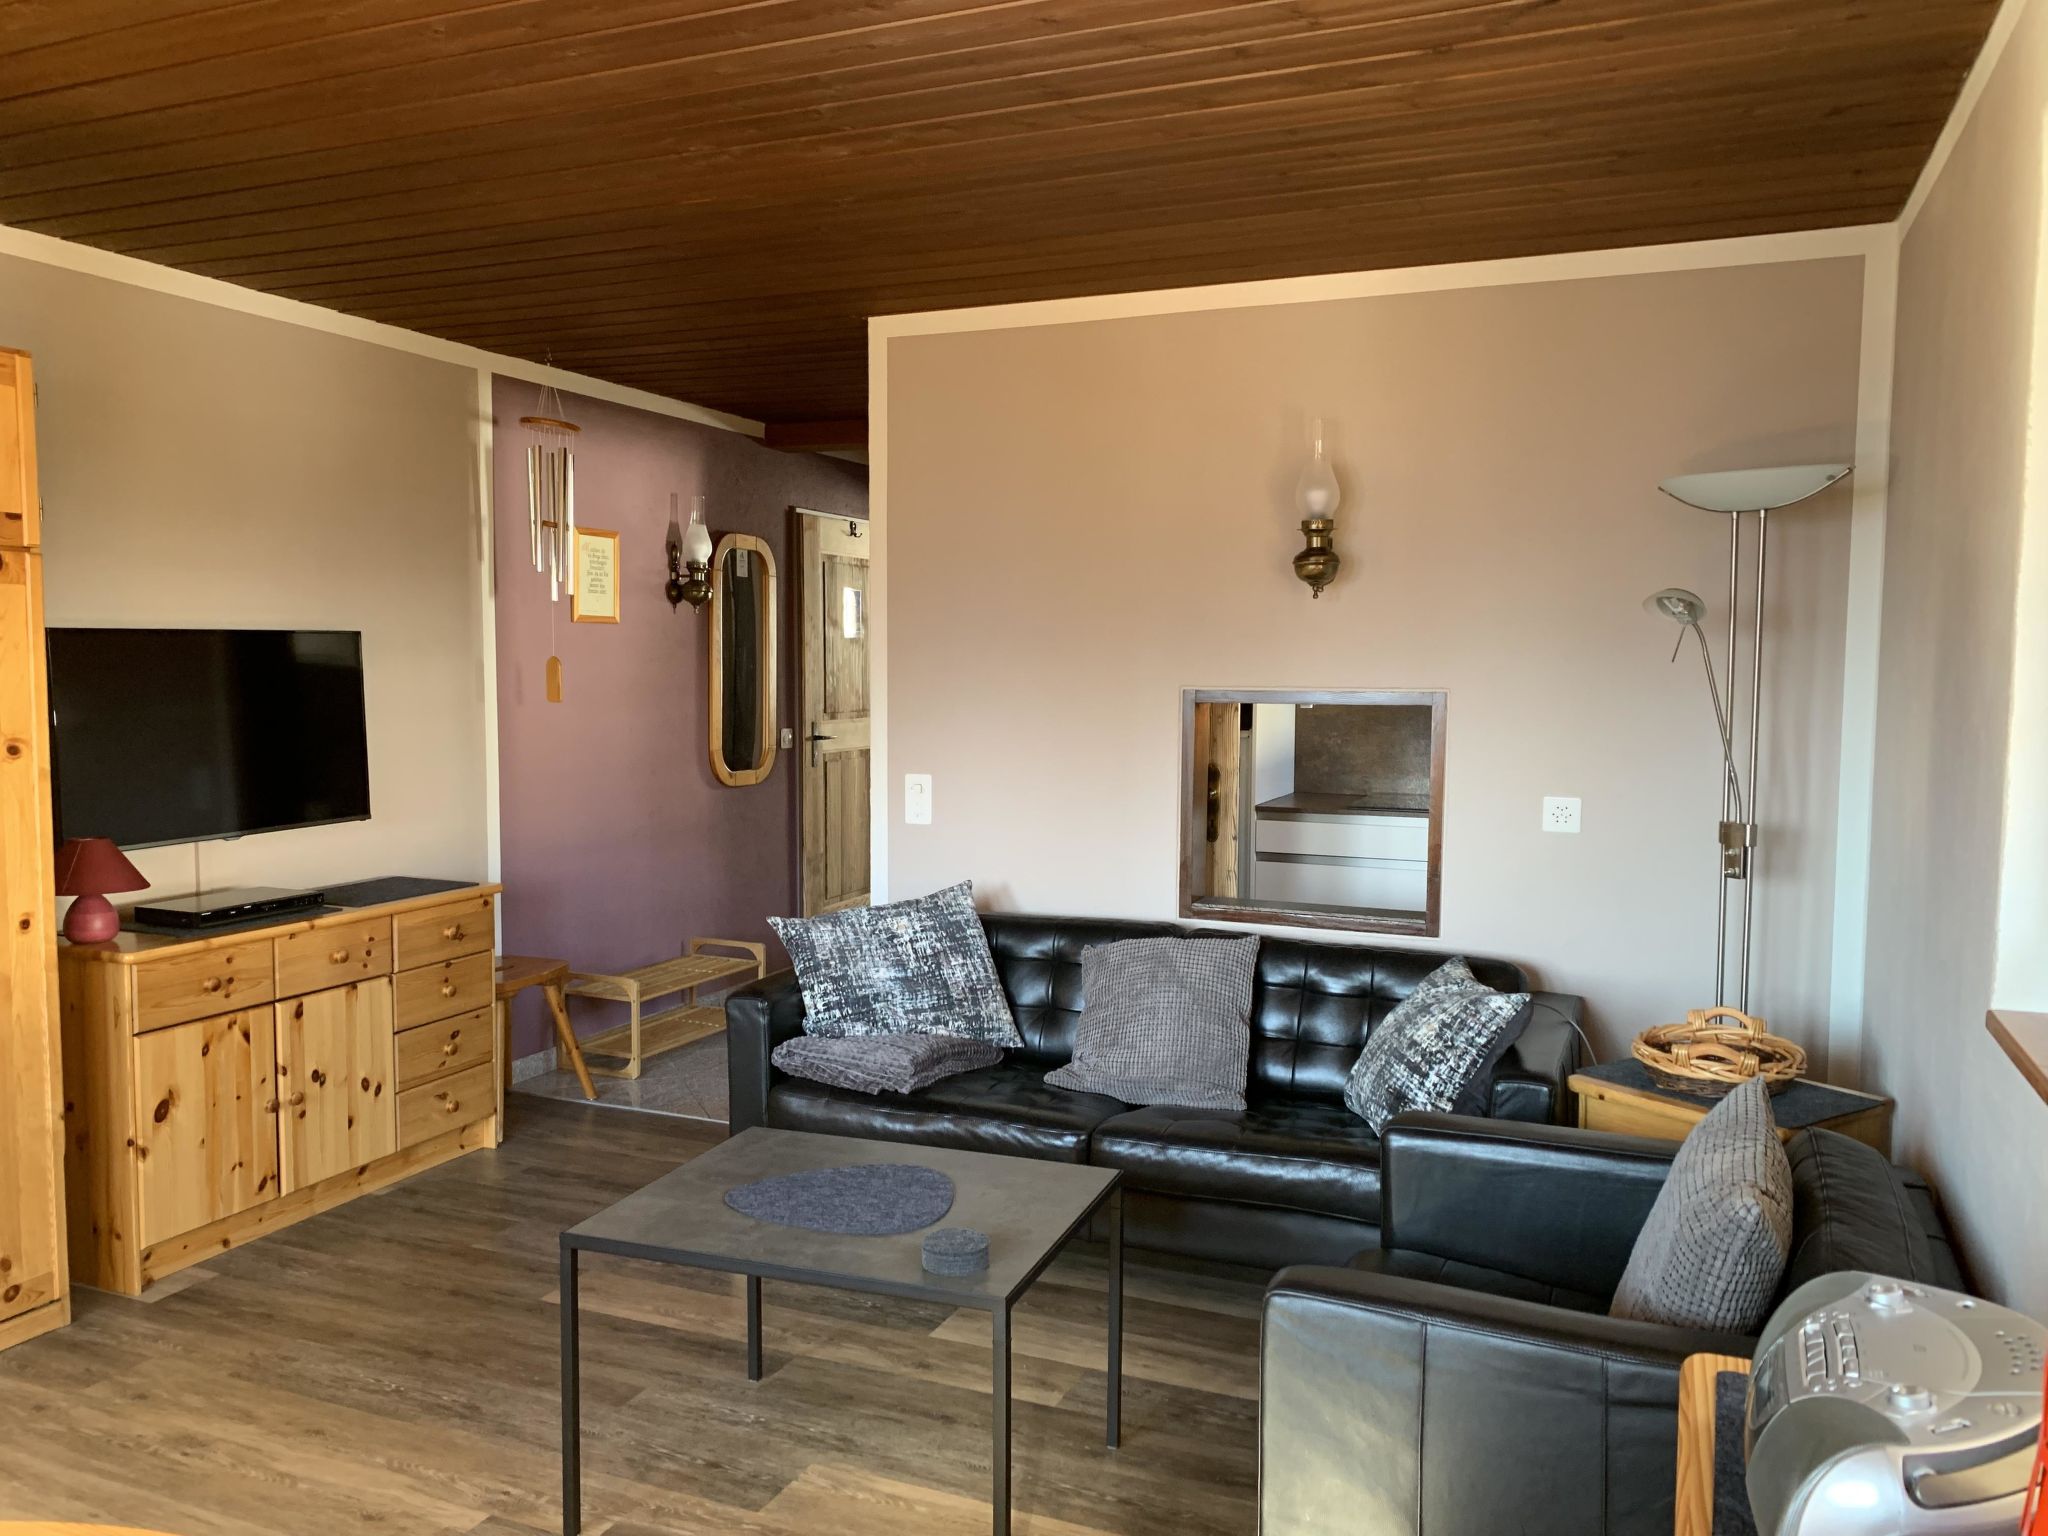 Foto 1 - Apartment mit 1 Schlafzimmer in Riederalp